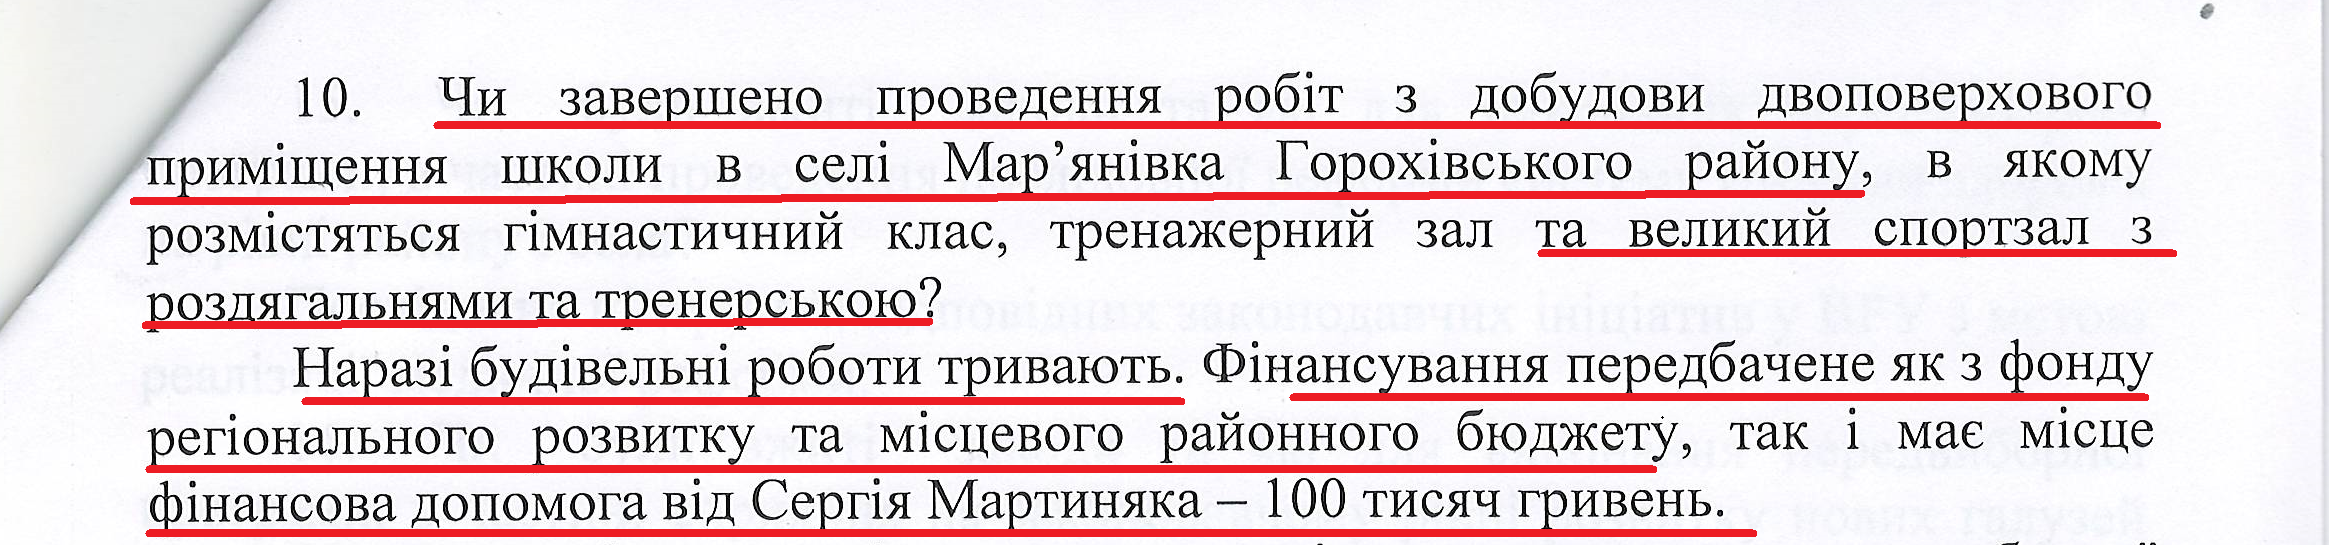 Лист народного депутата Сергія Мартиняка №76/15 від 8 вересня 2015 року